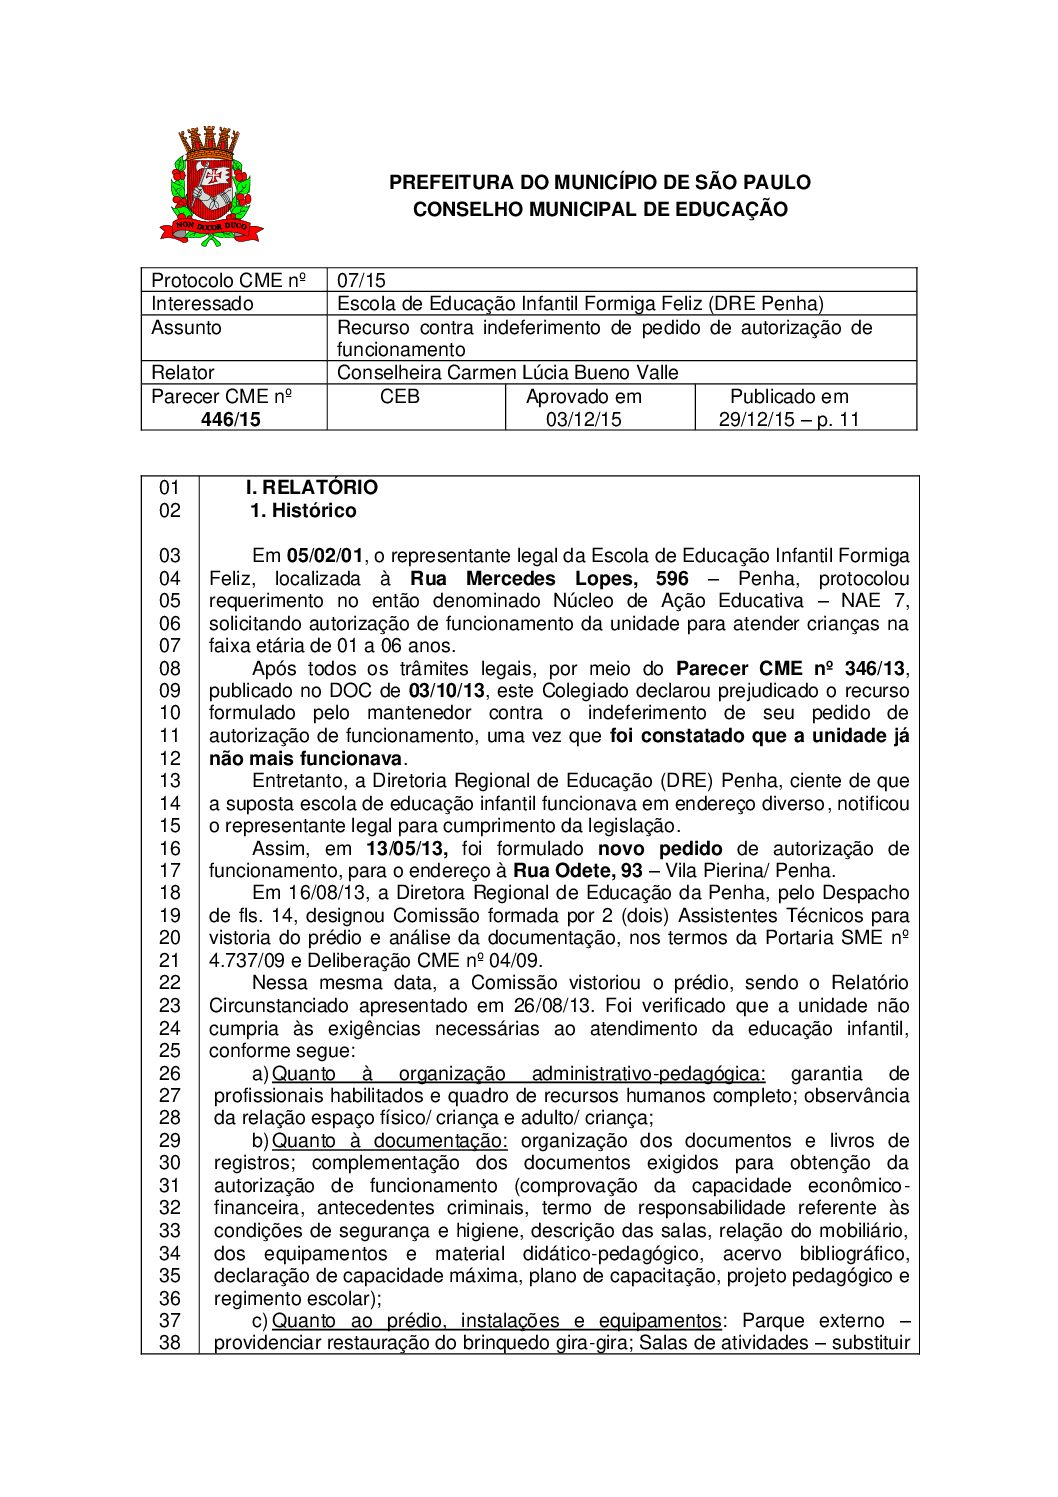 Parecer CME nº 446/2015 - Escola de Educação Infantil Formiga Feliz (DRE Penha) - Recurso contra indeferimento de pedido de autorização de funcionamento 